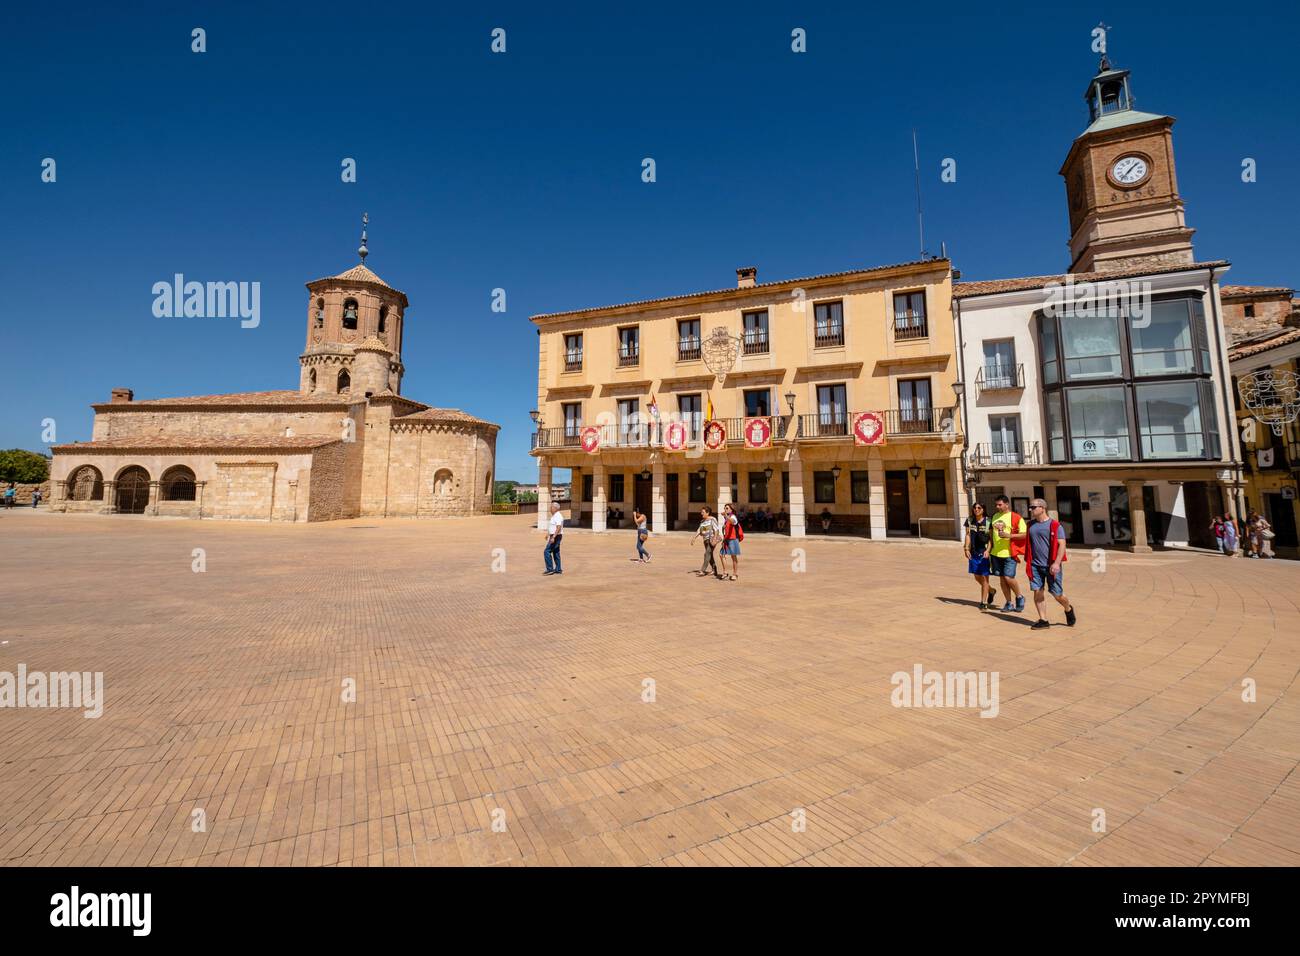 Iglesia de San Miguel y ayuntamiento,  Almazán, Soria,  comunidad autónoma de Castilla y León, Spain, Europe Stock Photo